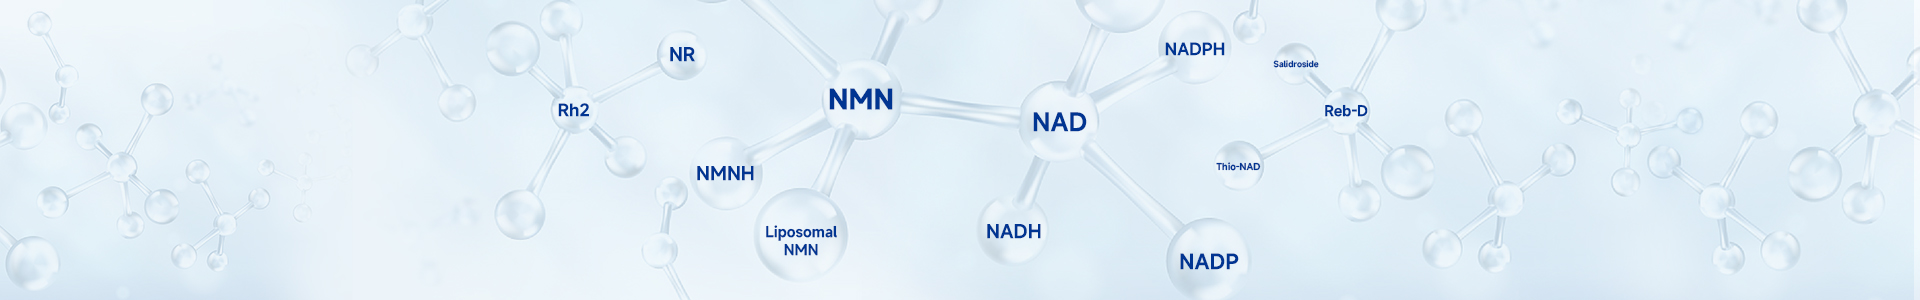 NMN β-煙醯胺單核苷酸